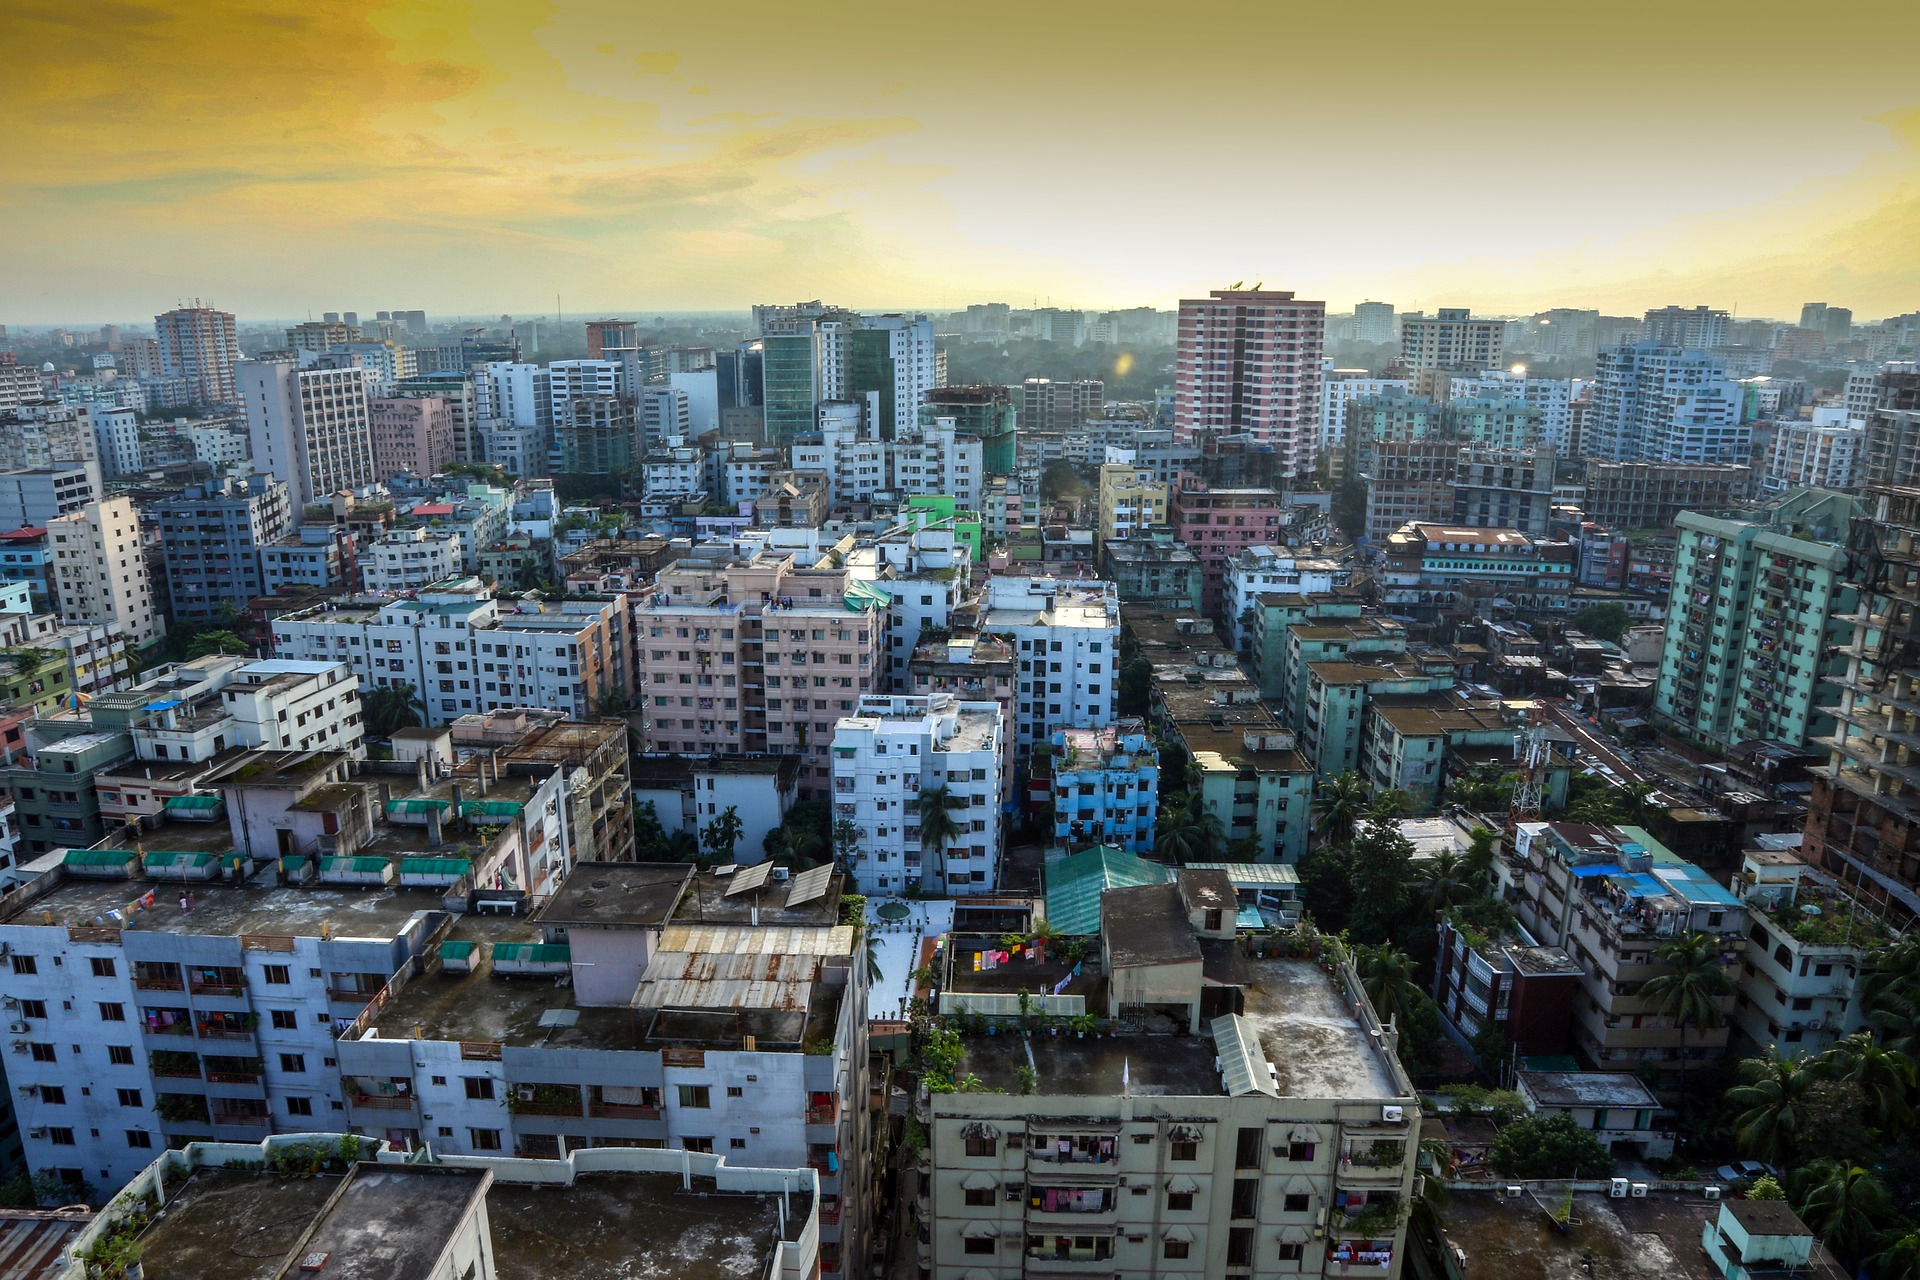 Skyline of Dhaka